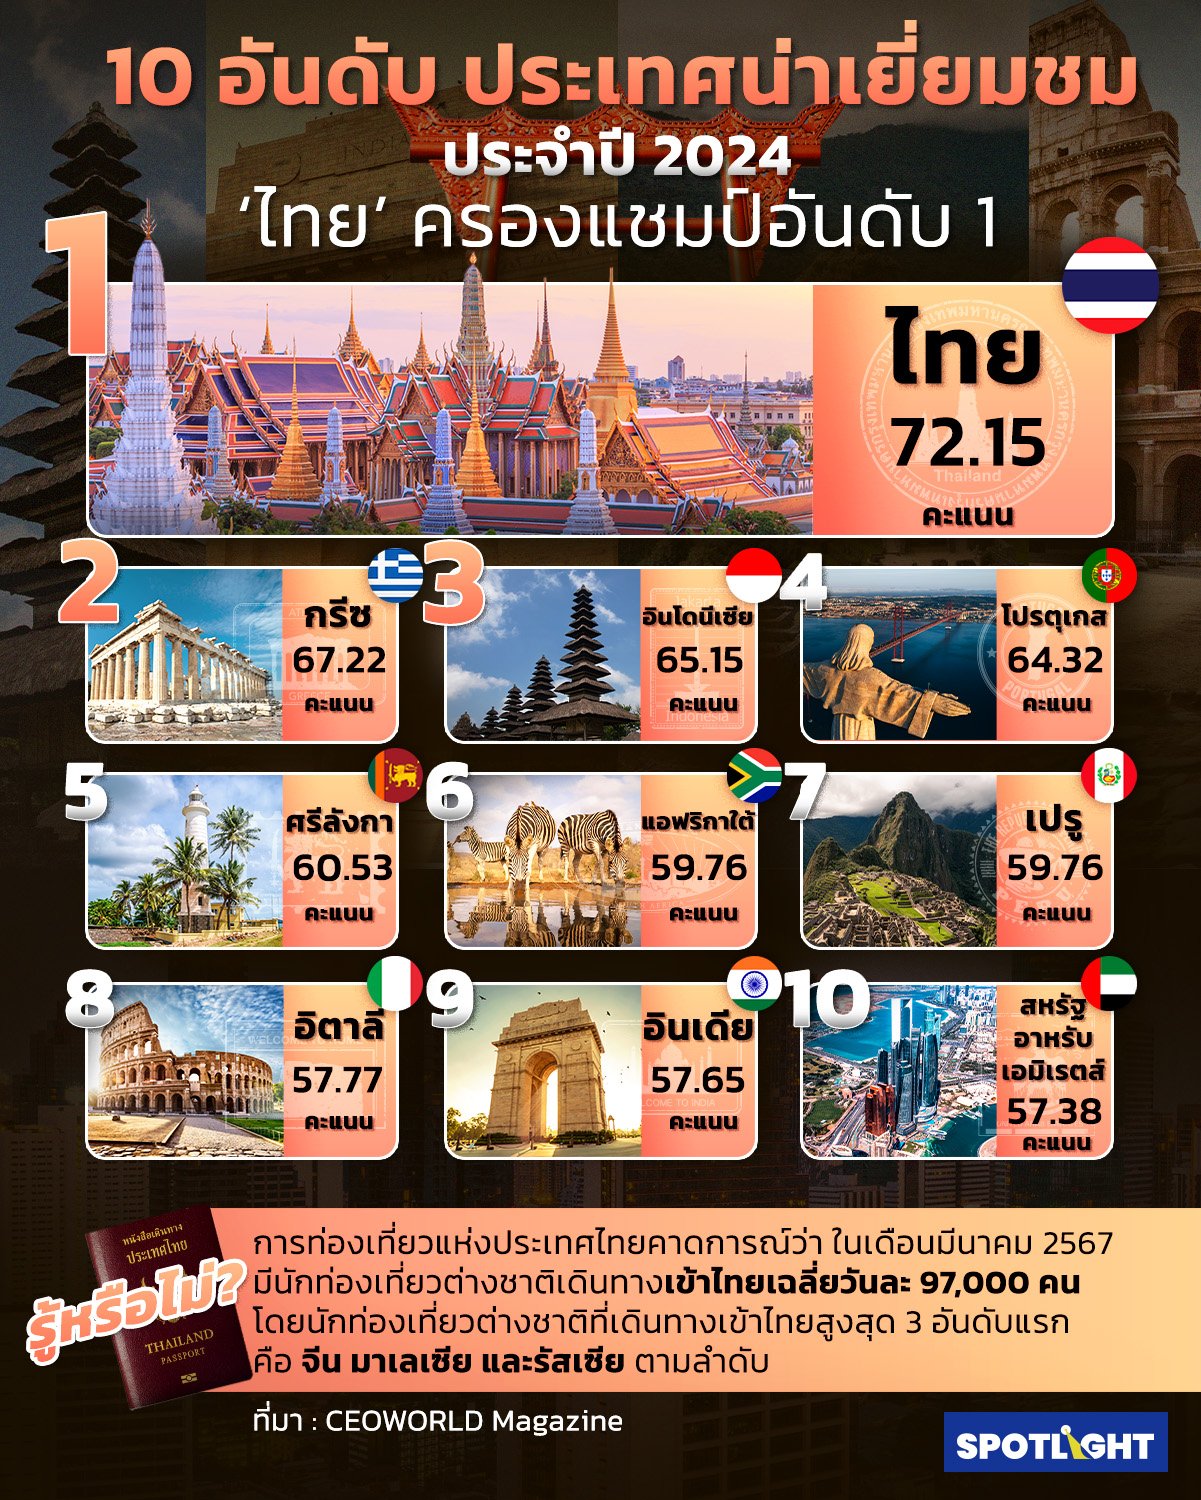 ‘ประเทศไทย’ ครองแชมป์อันดับ 1 ประเทศน่าเยี่ยมชม ประจำปี 2024